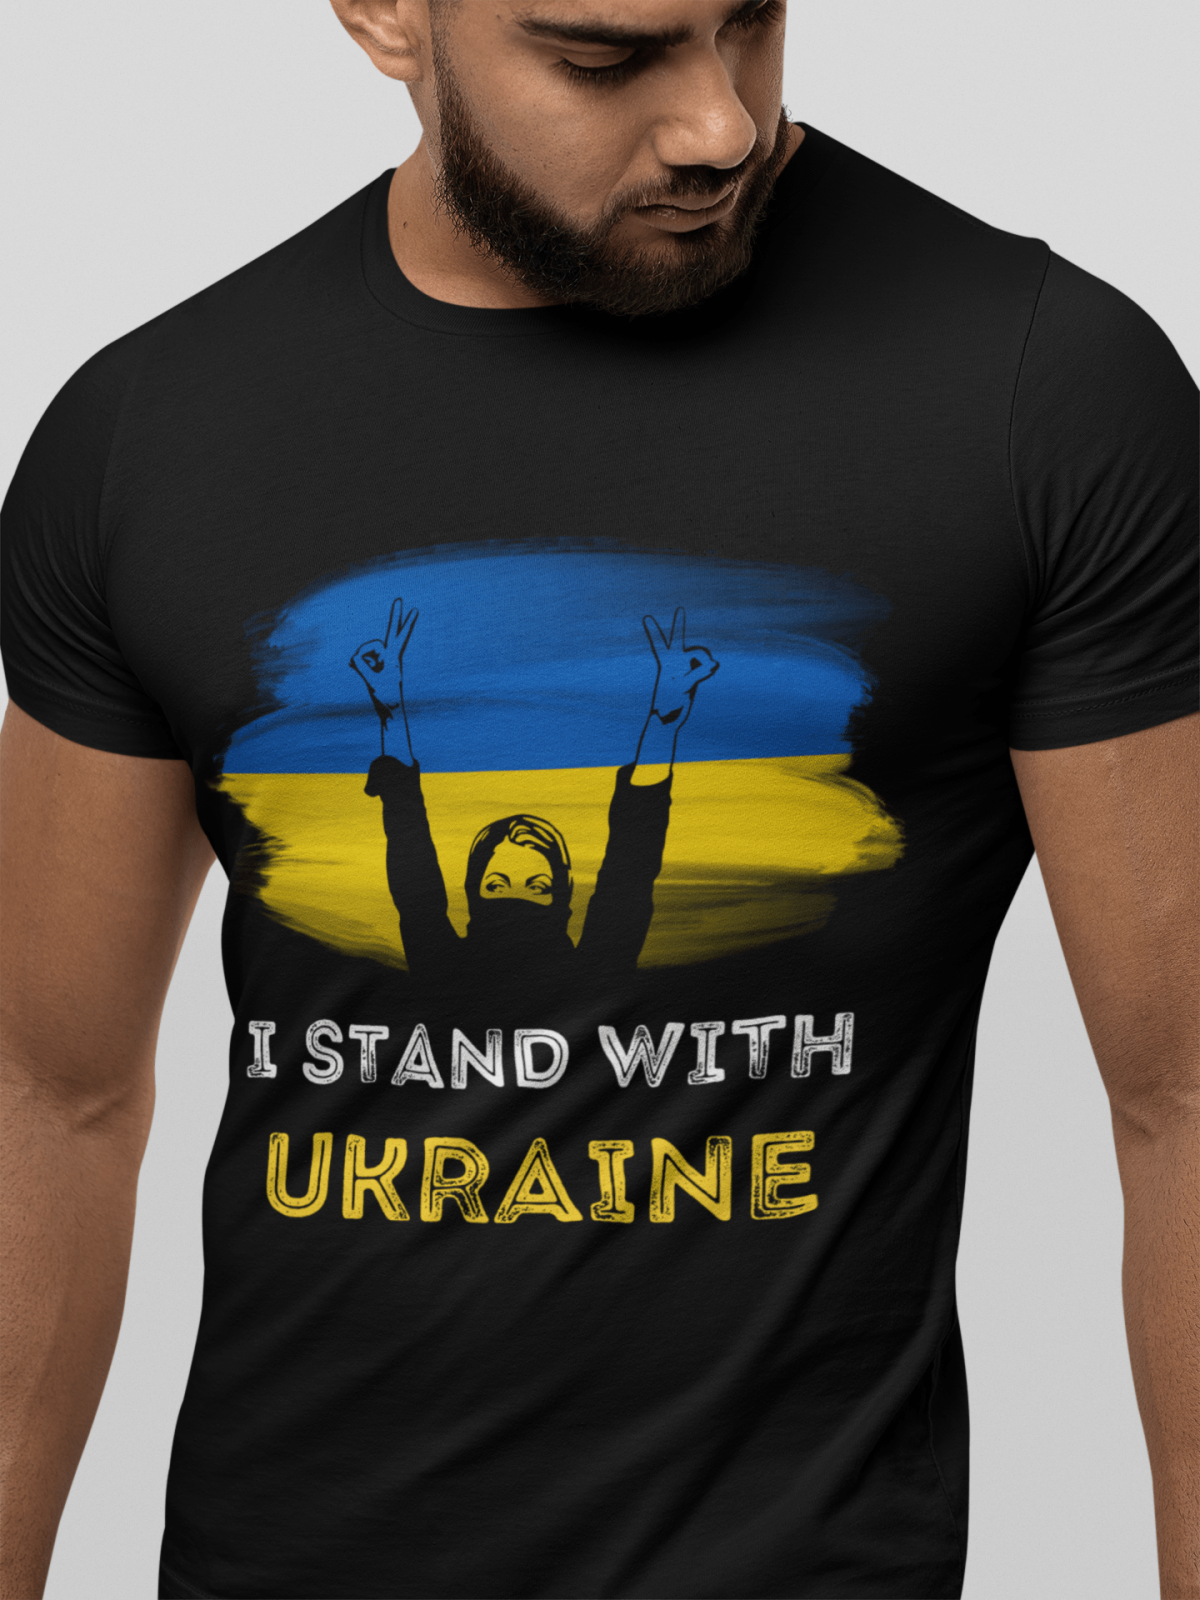 tkrekls "I stand with Ukraine"